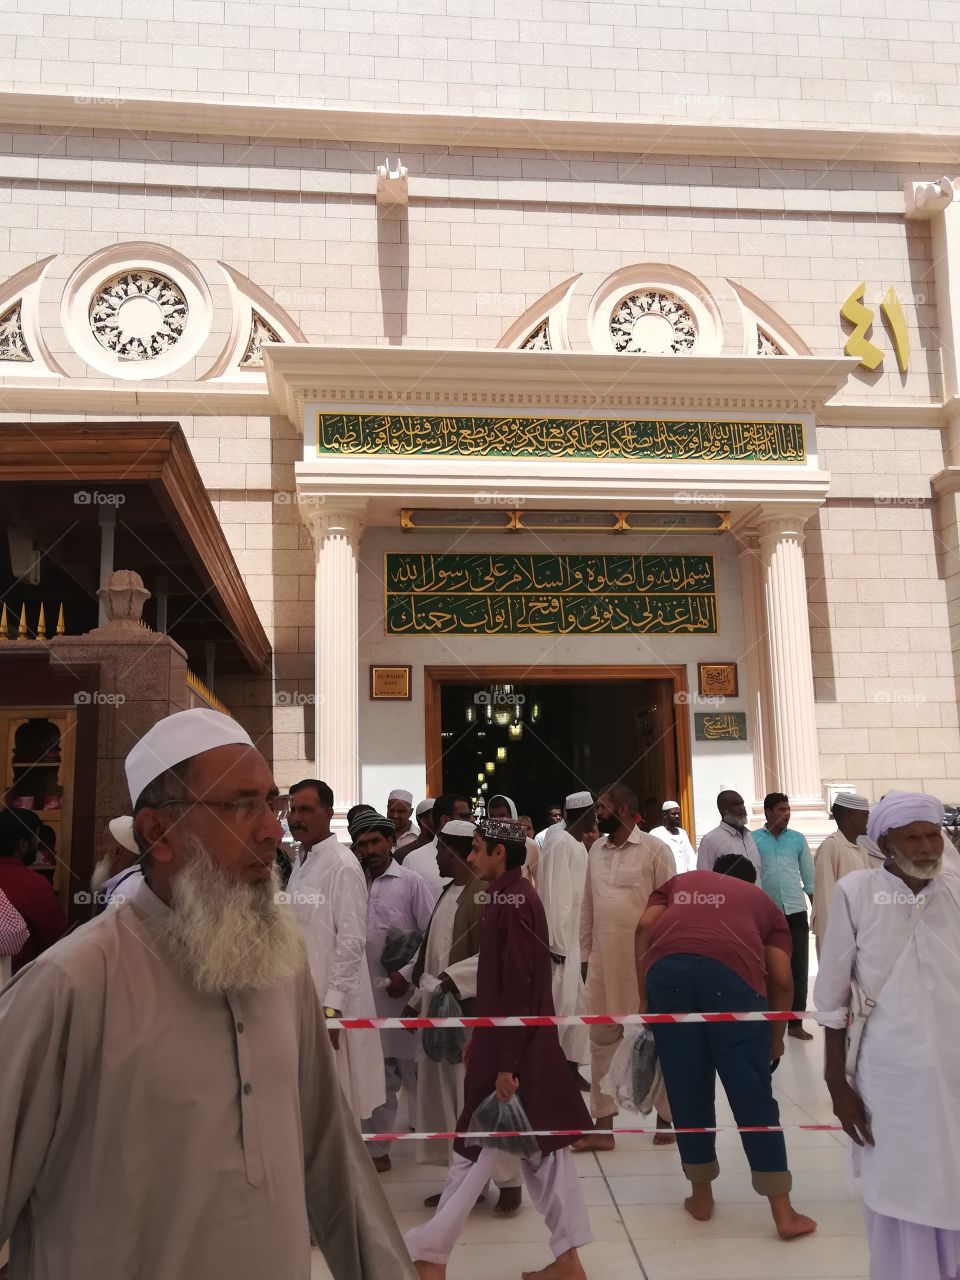 Muhammed, Abo Bakr, Omar, 3aesha house